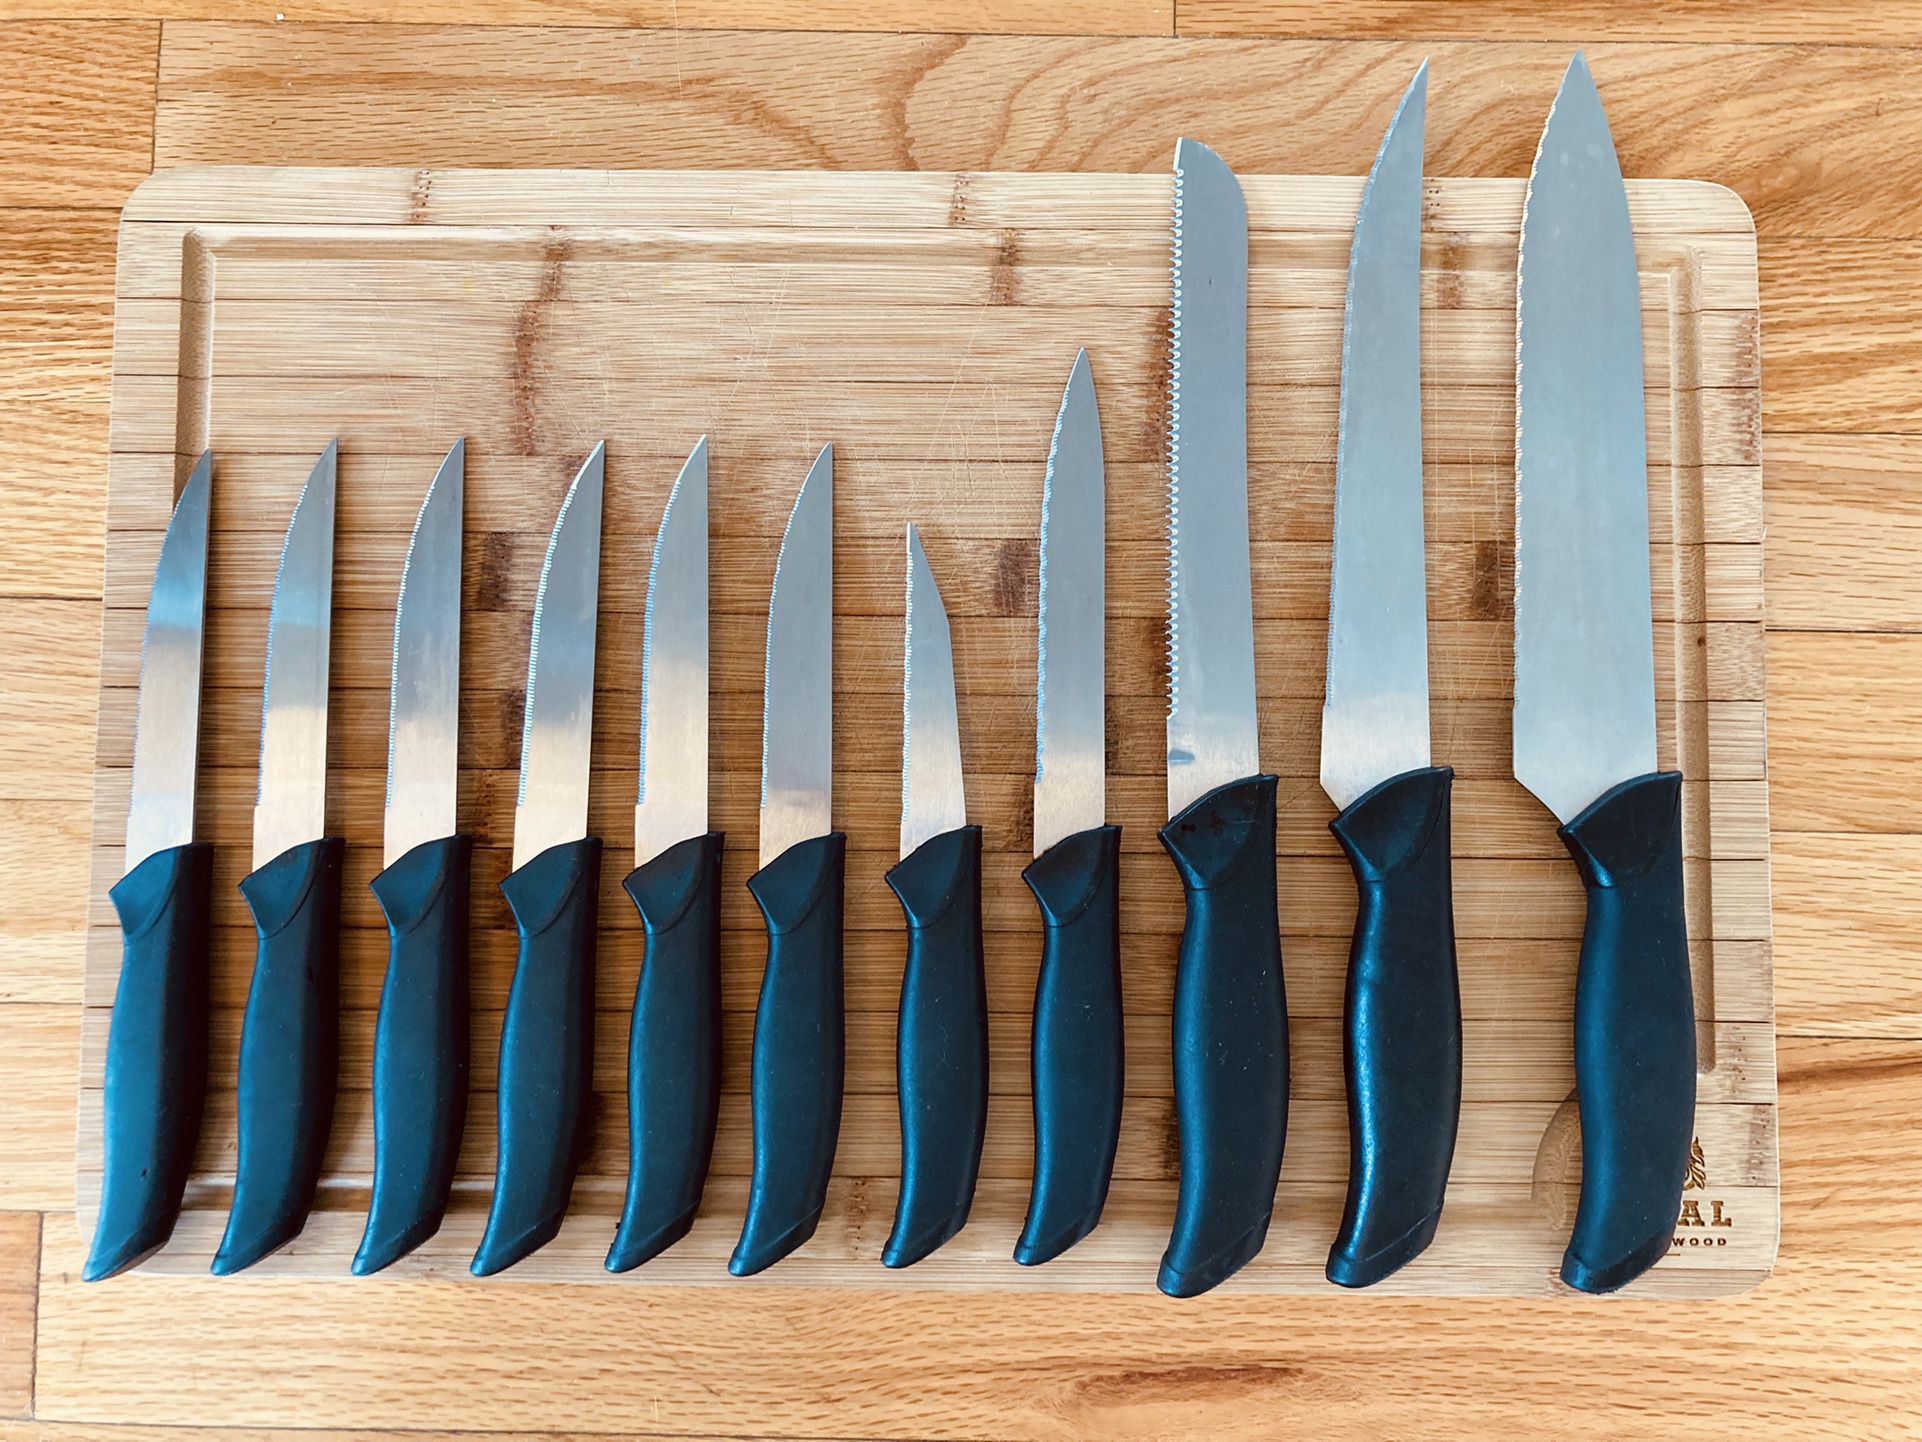 Knife Sets for sale in Denver, Colorado